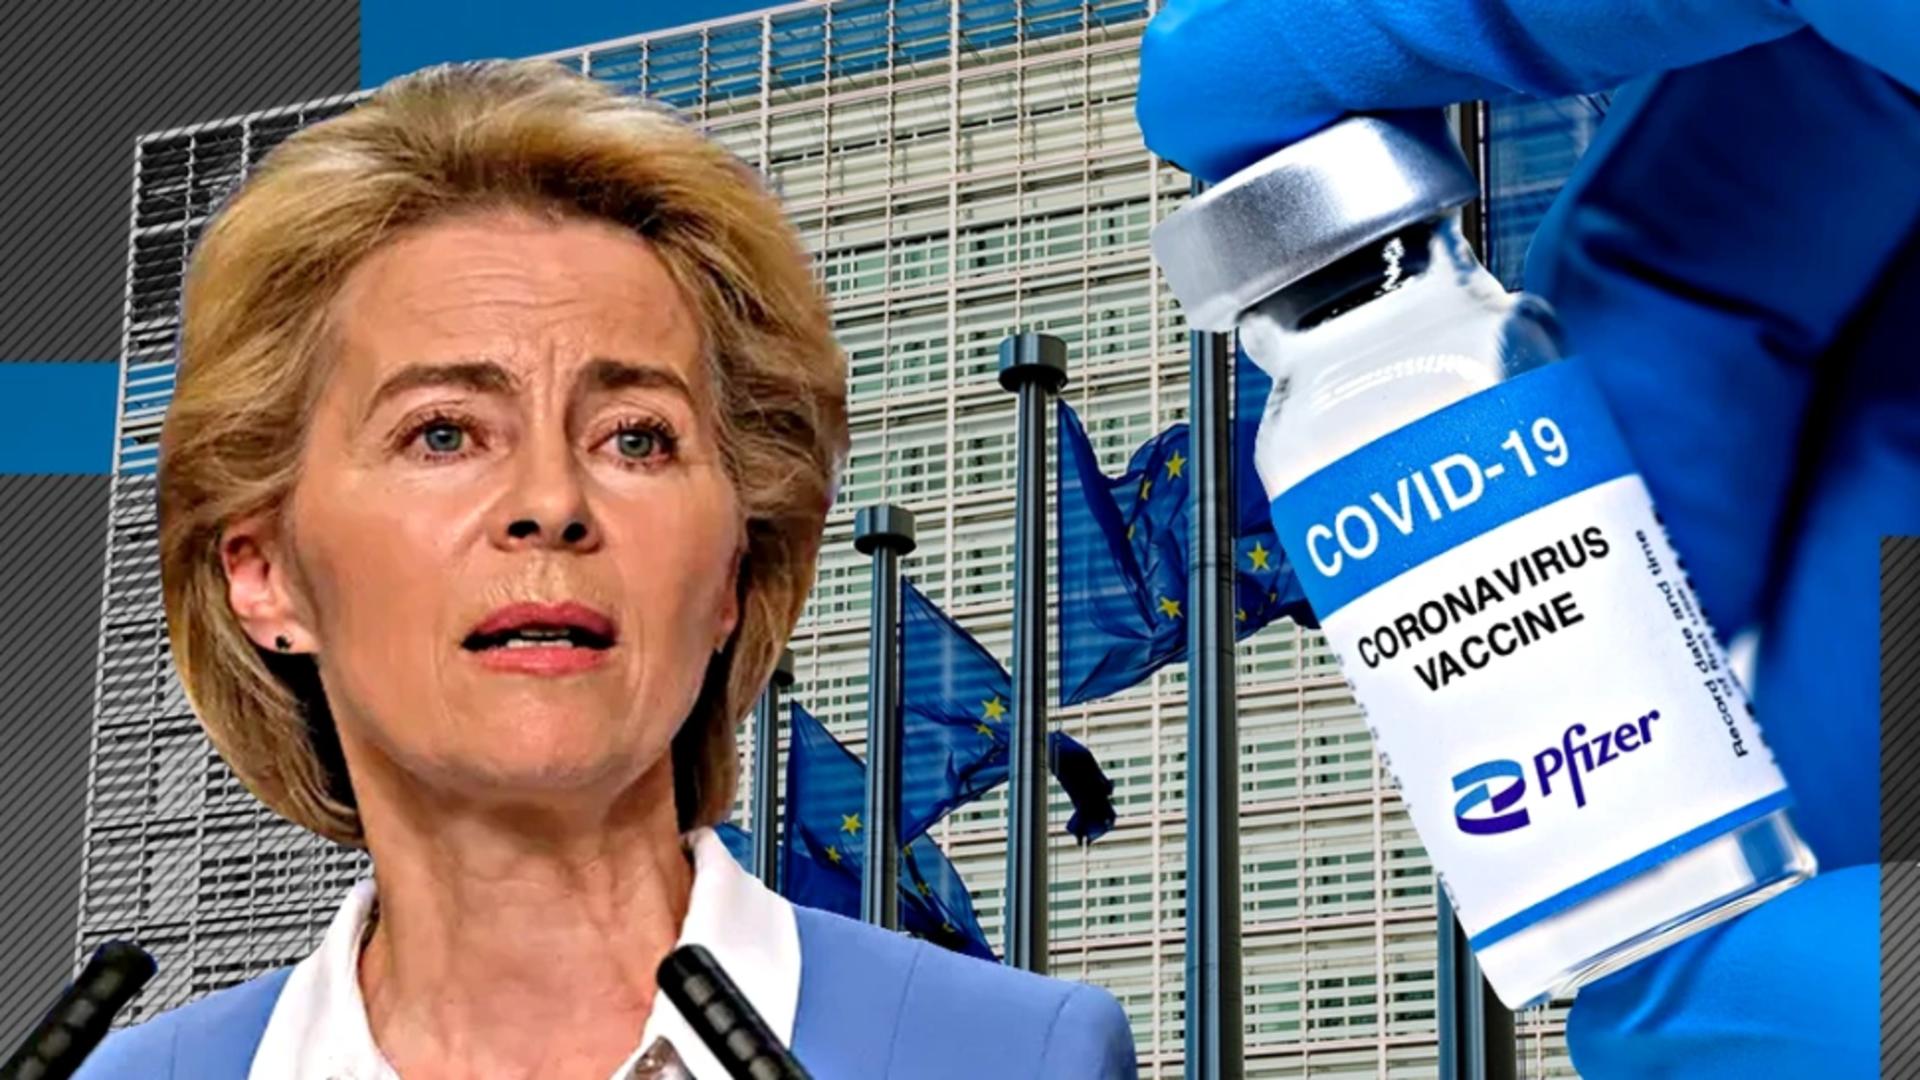 A fost SCHIMBAT contractul controversat cu Pfizer pentru vaccinurile COVID-19: Dozele livrate țărilor UE până în 2027